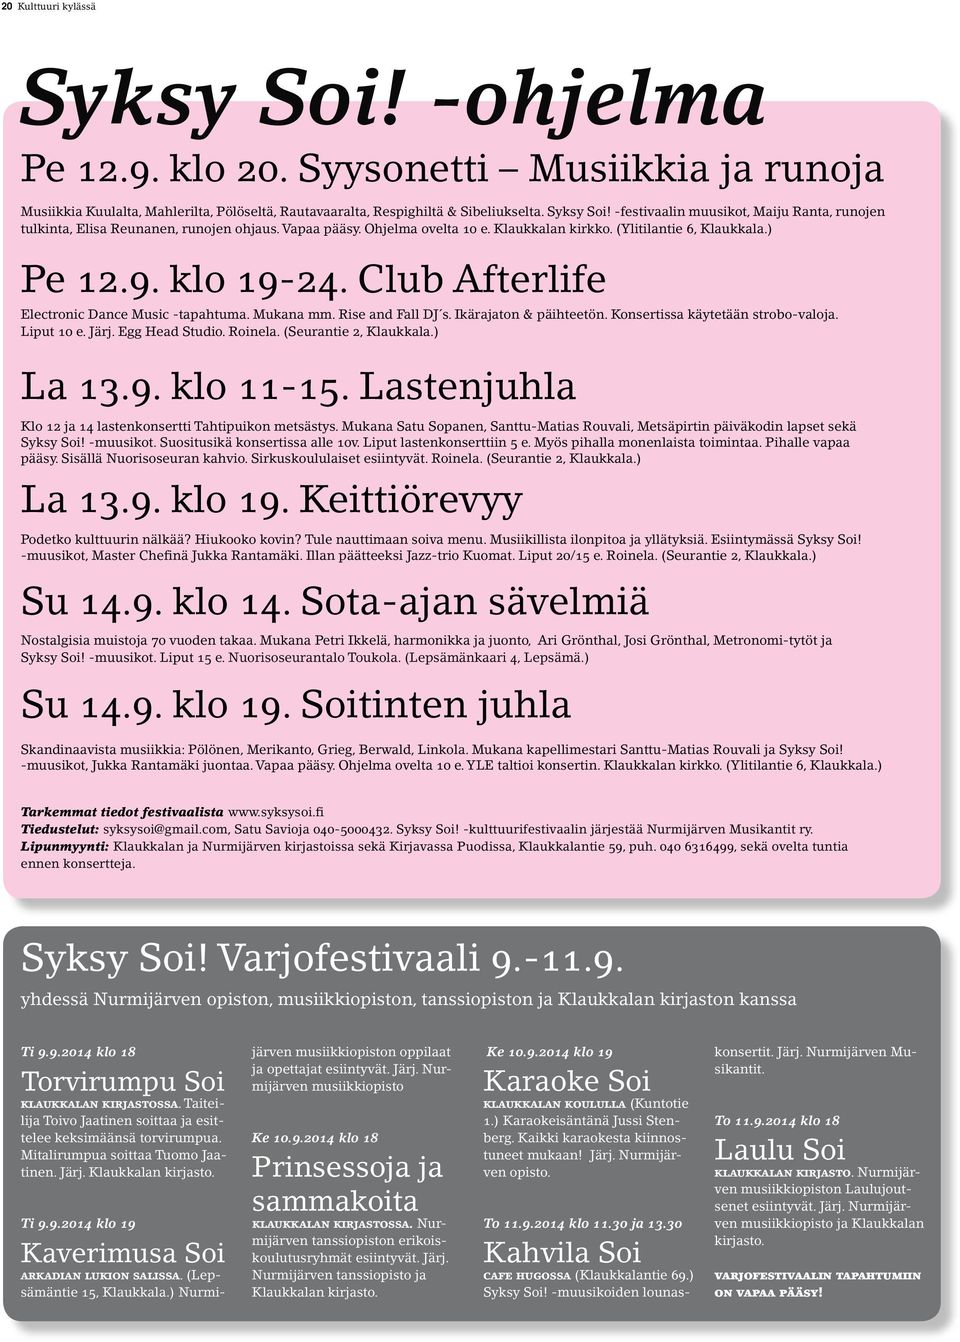 Ikärajaton & päihteetön. Konsertissa käytetään strobo-valoja. Liput 10 e. Järj. Egg Head Studio. Roinela. (Seurantie 2, Klaukkala.) La 13.9. klo 11-15.